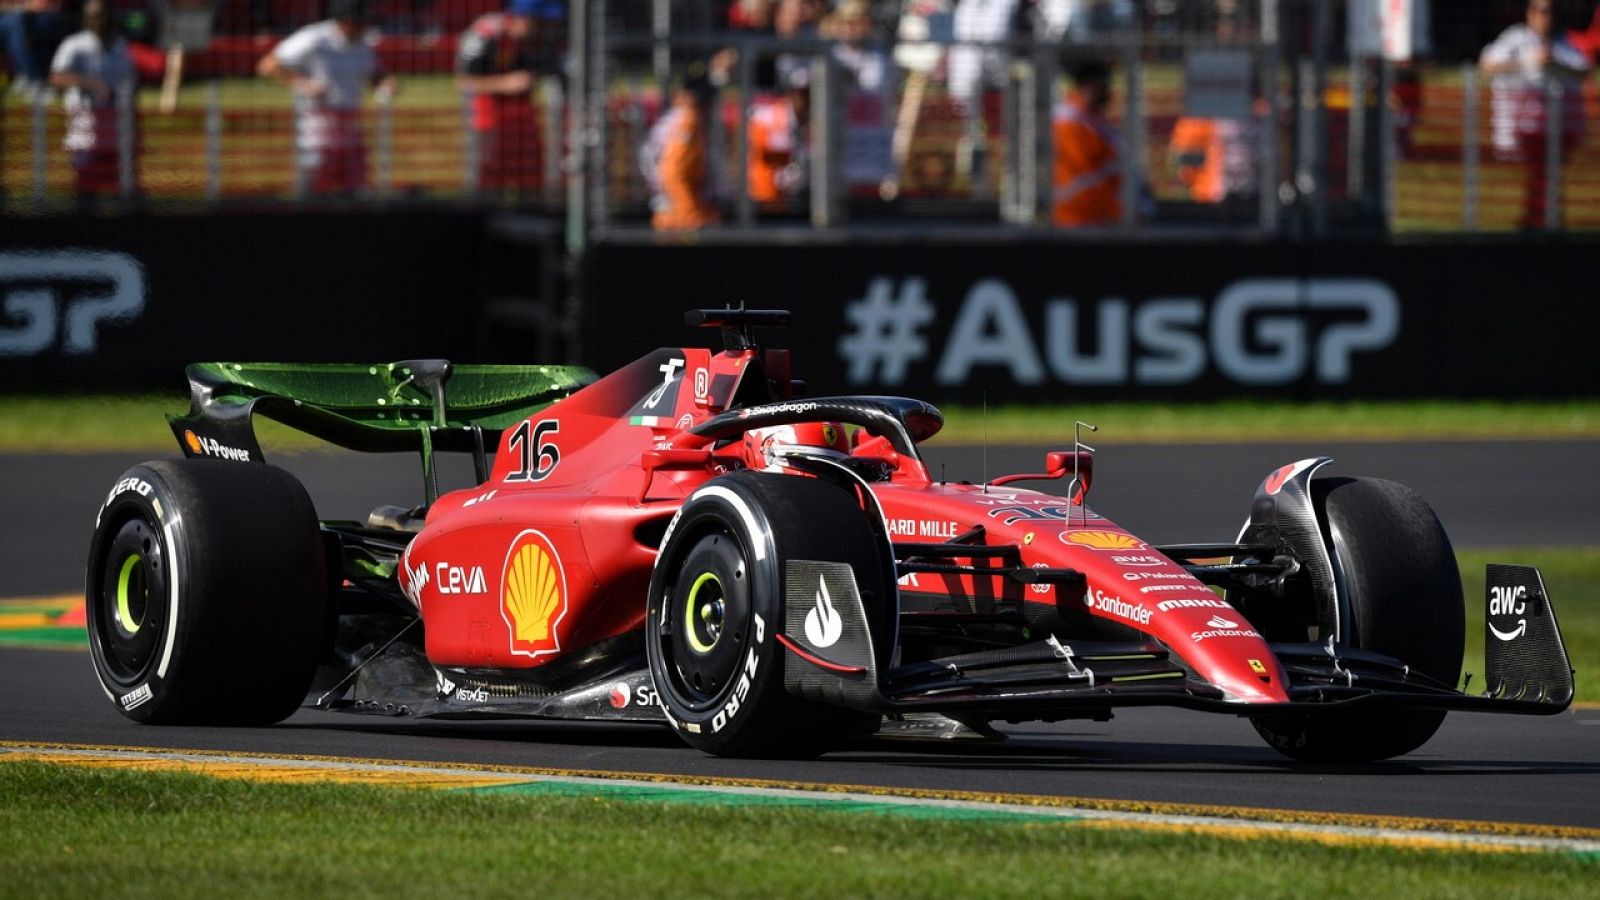 La F1 vuelve a Australia con Leclerc líder para Ferrari